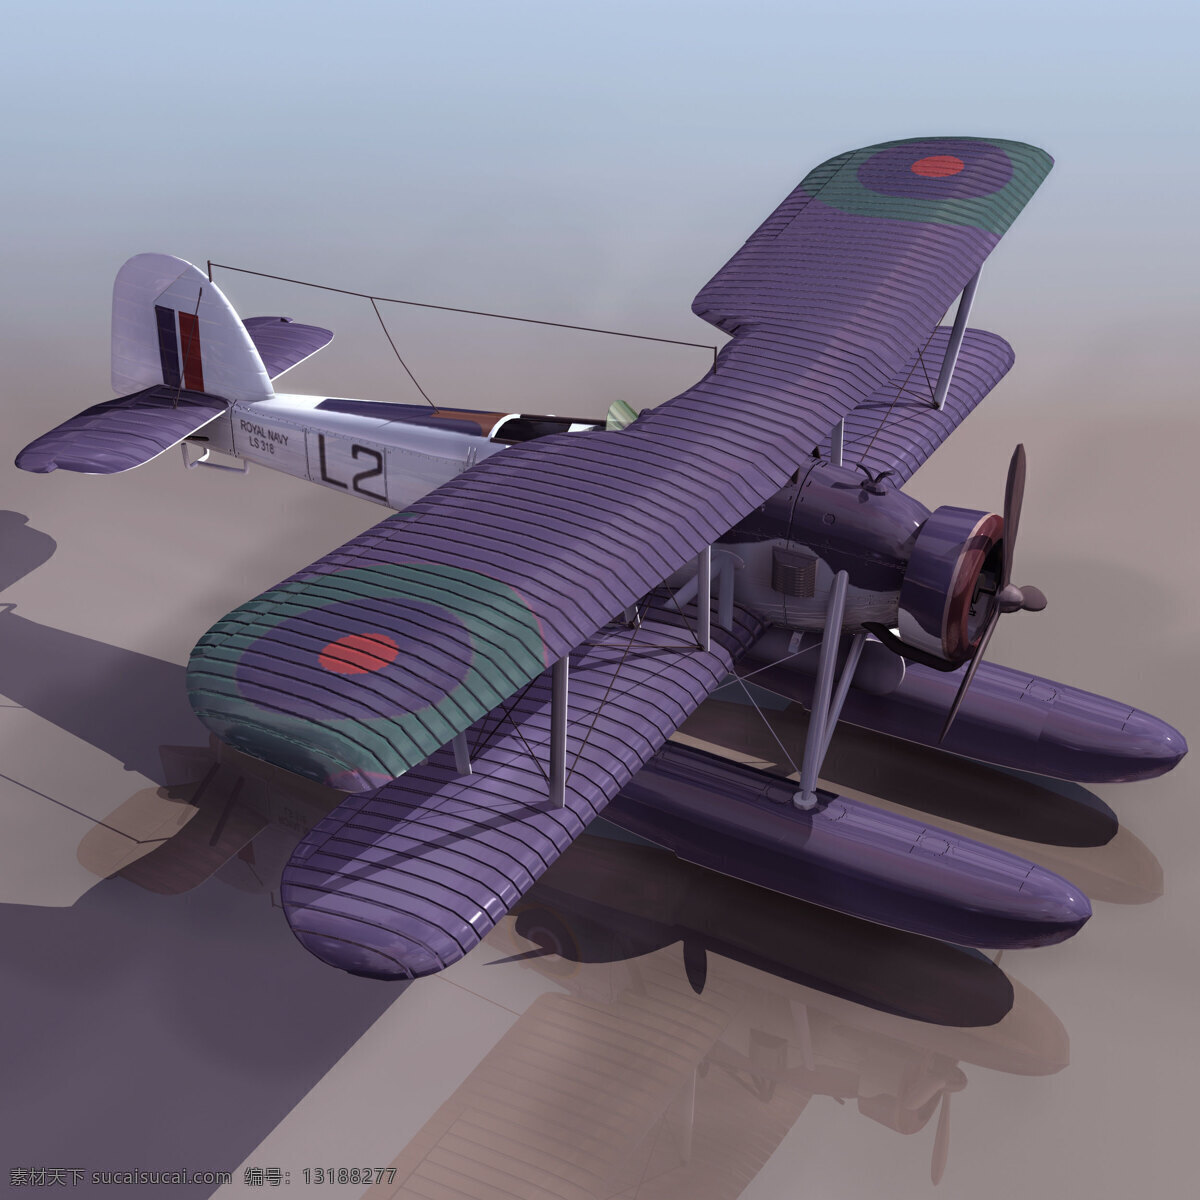 飞机模型 tswor 军事模型 空军武器库 3d模型素材 其他3d模型